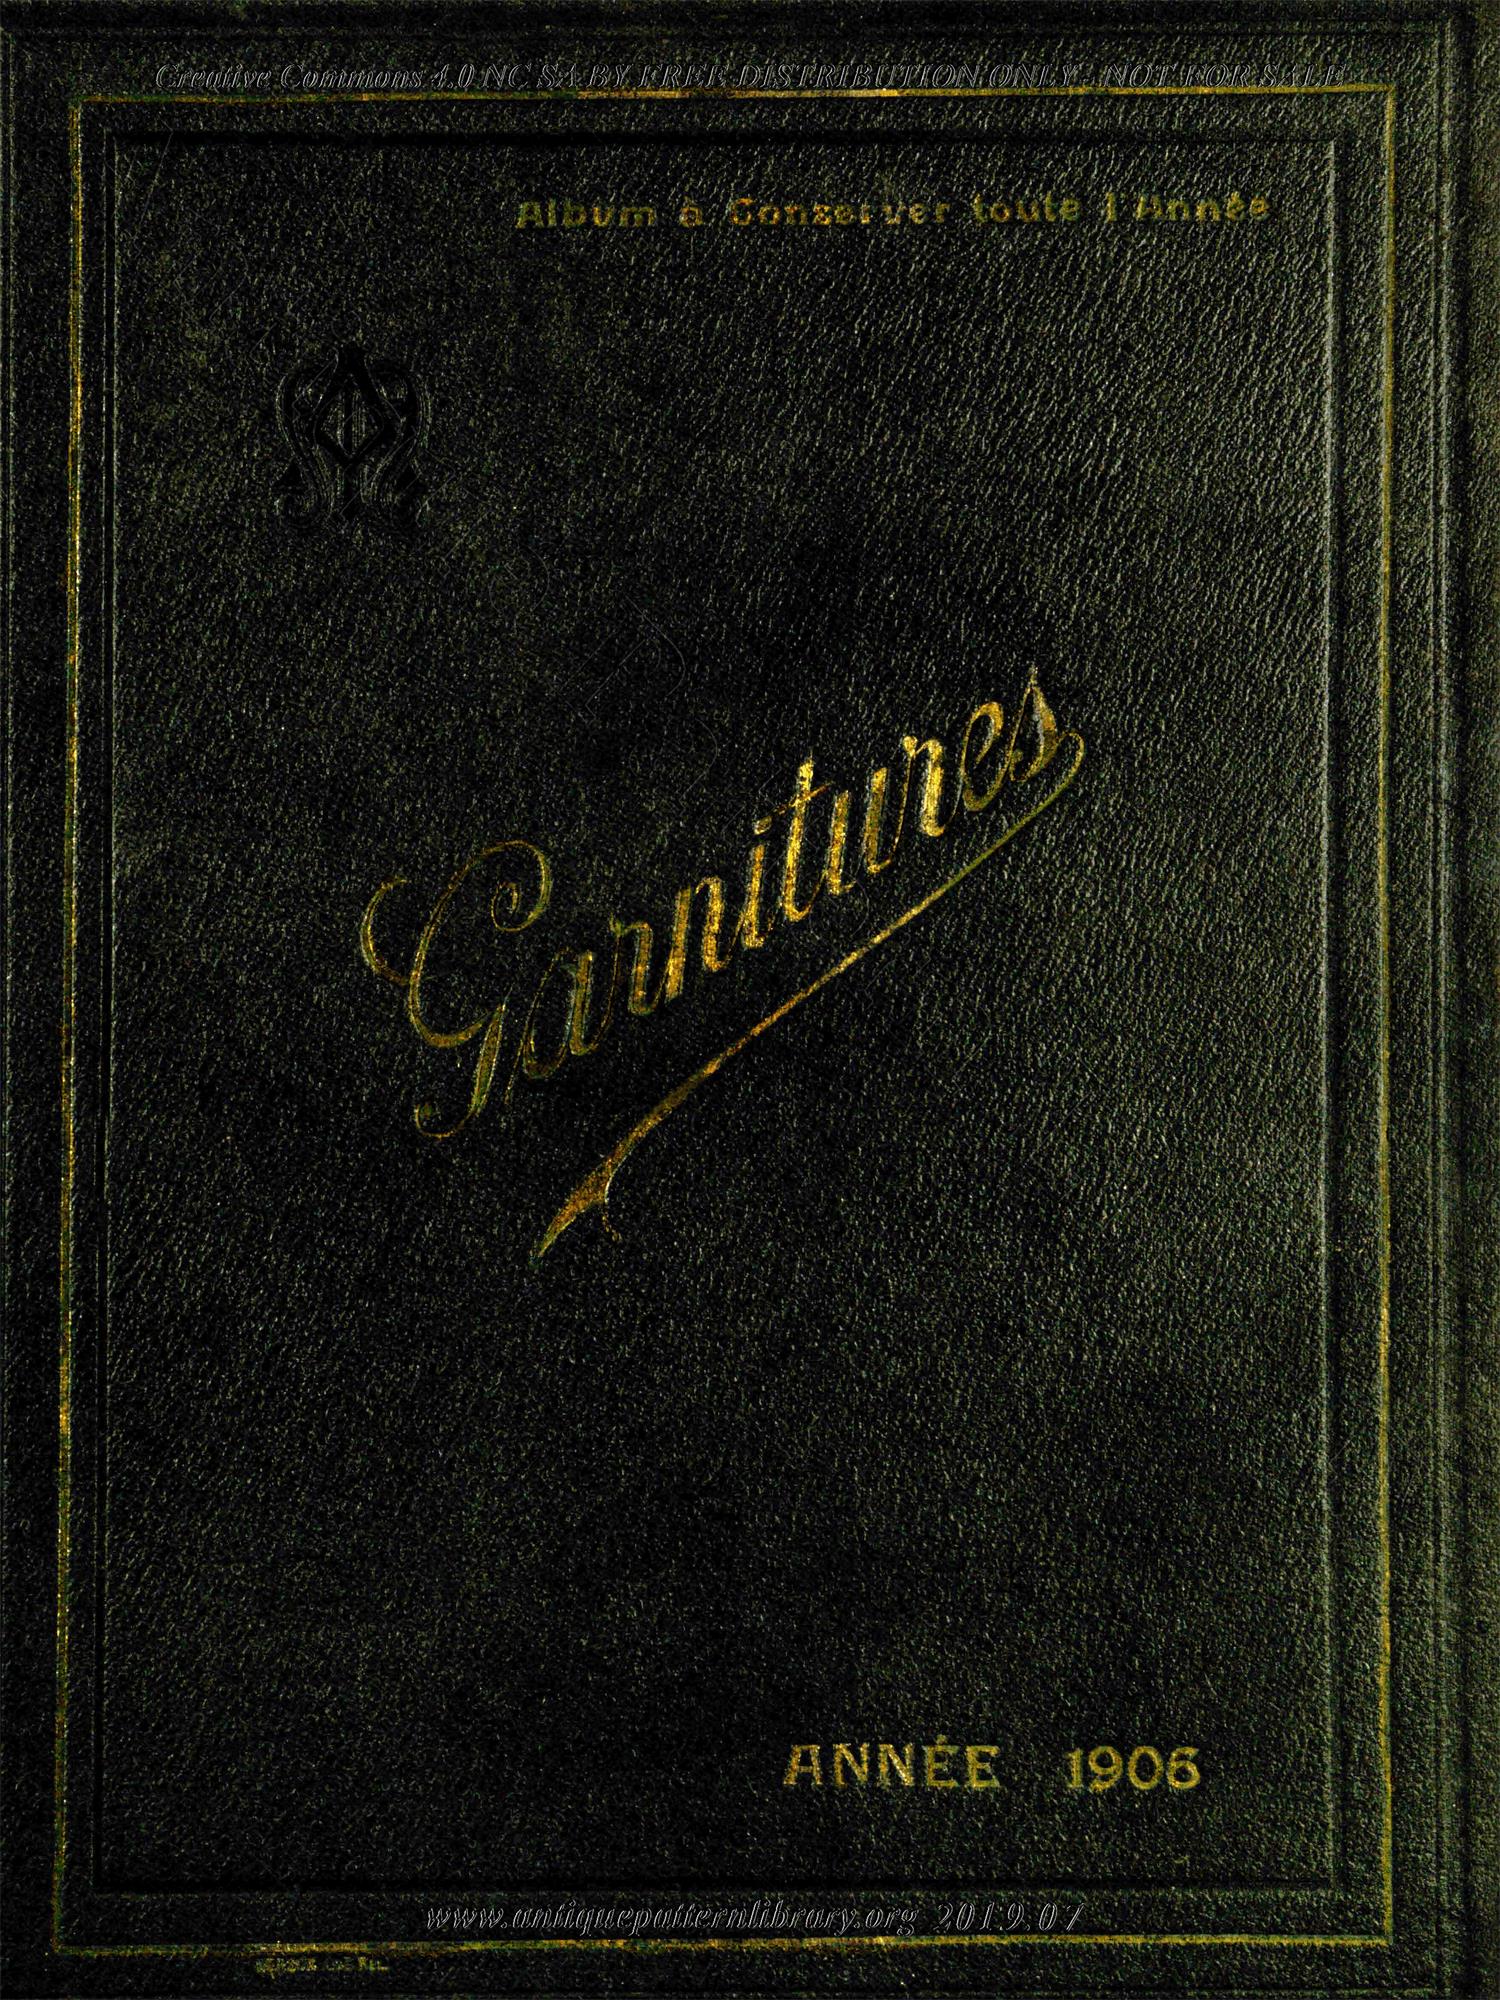 H-XX063 Garnitures, Album a conserver pendant toute l'annee 1906